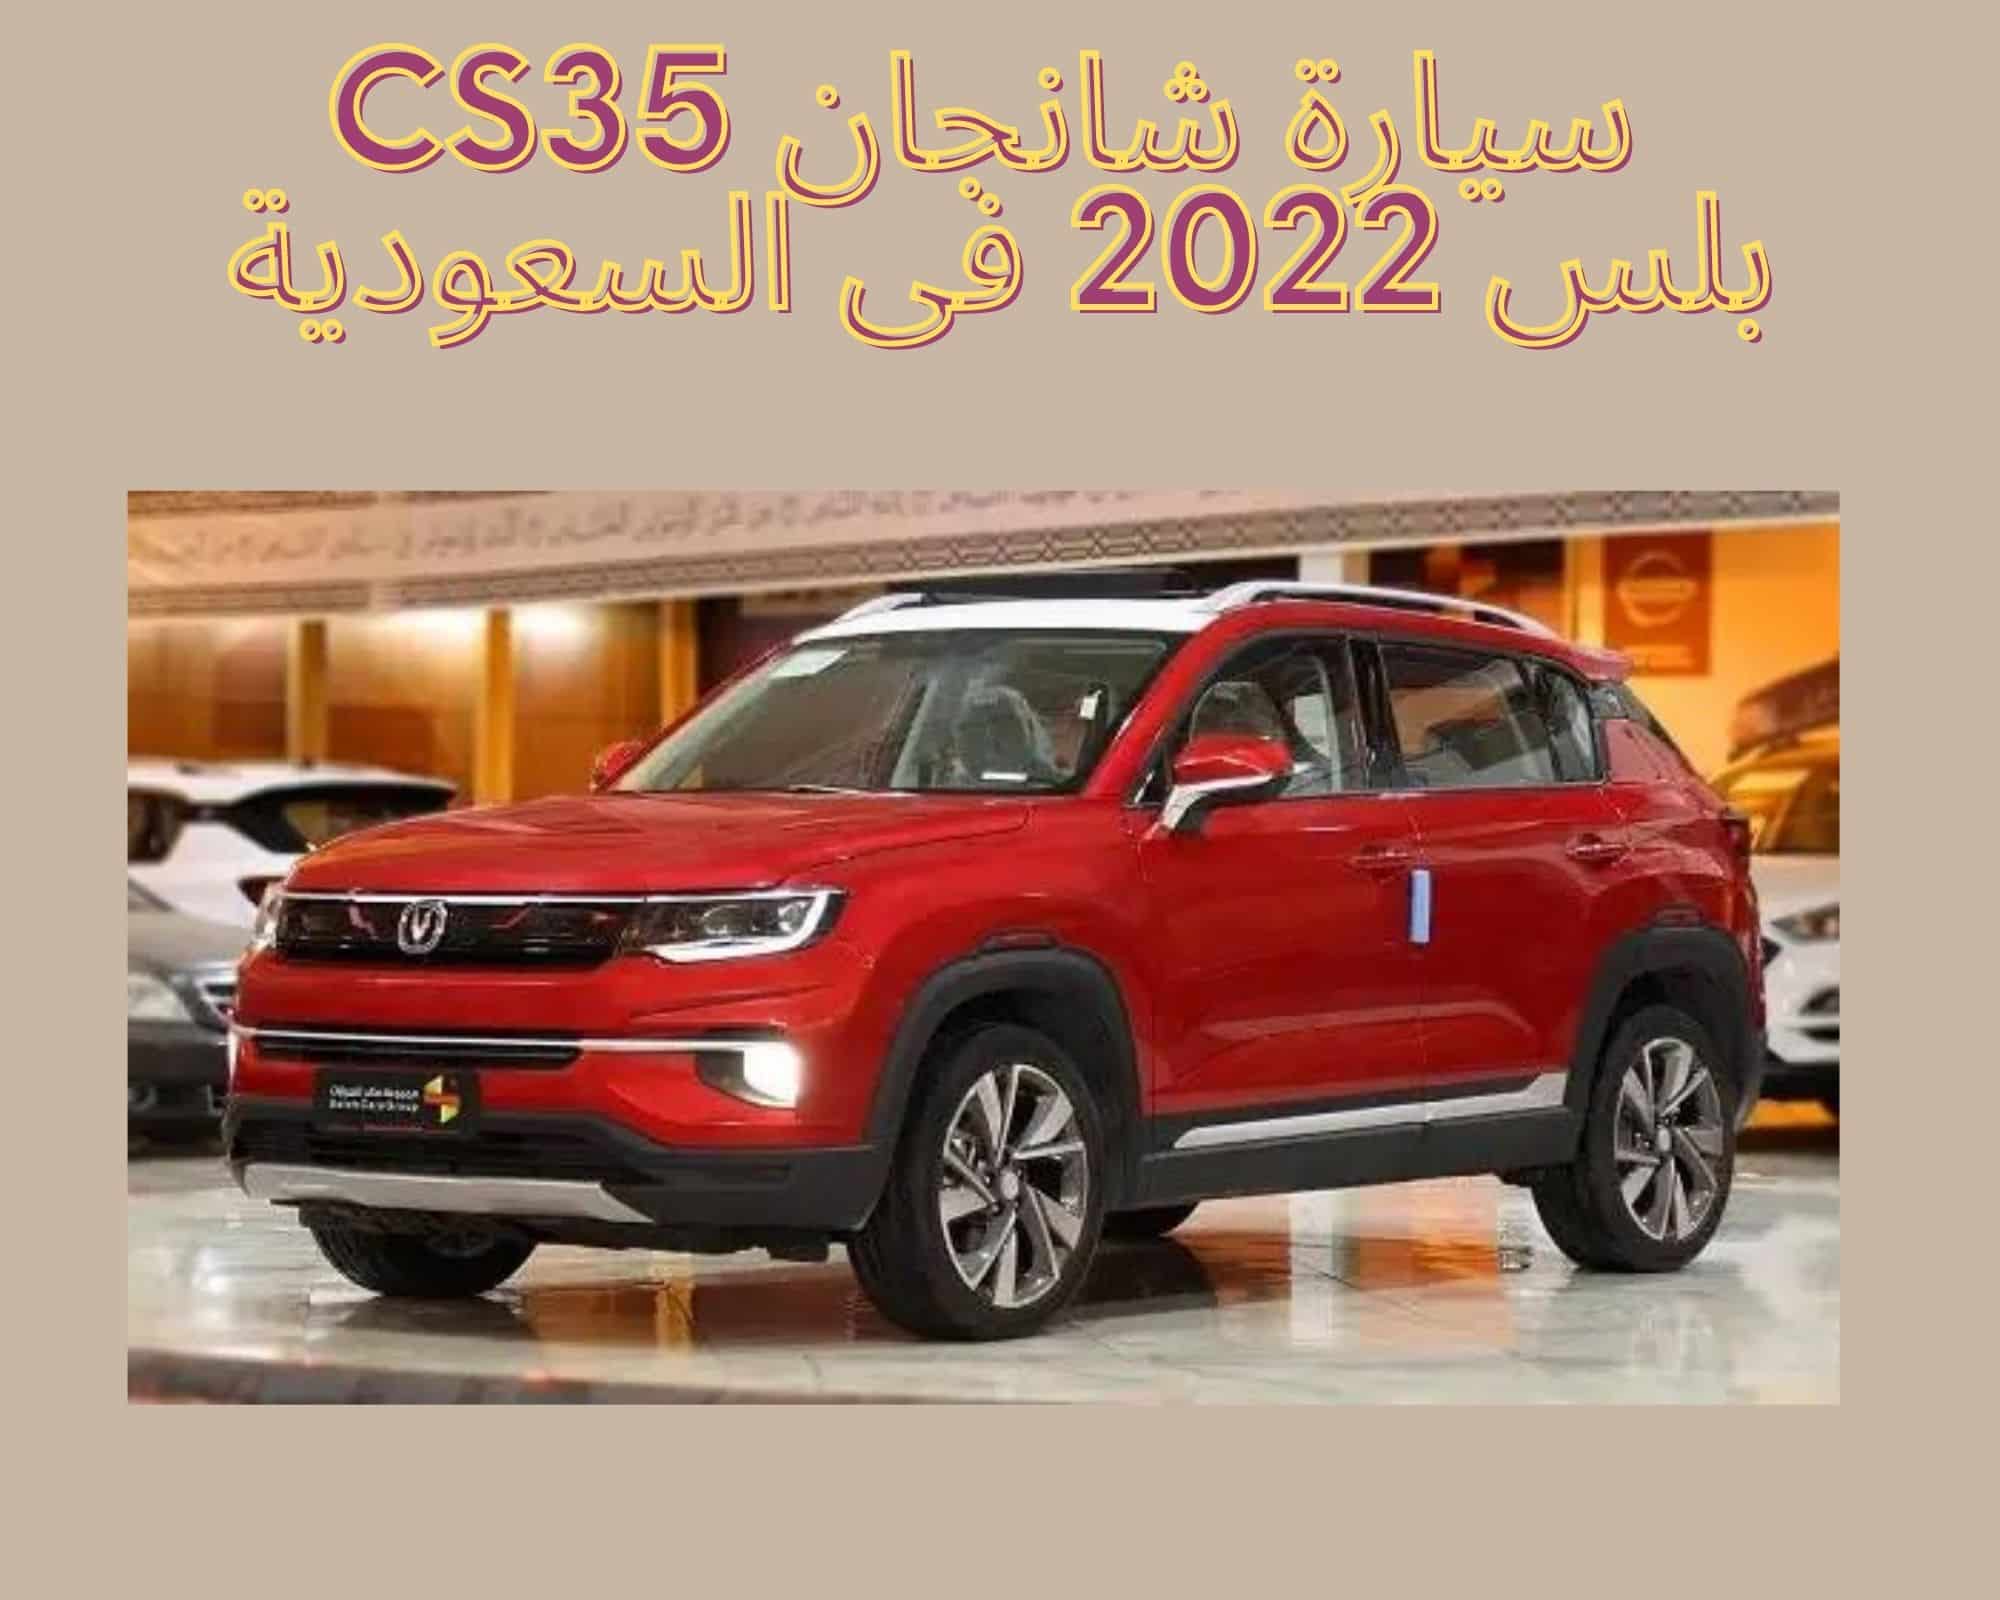 سيارة شانجان cs35 بلس 2022 فى السعودية